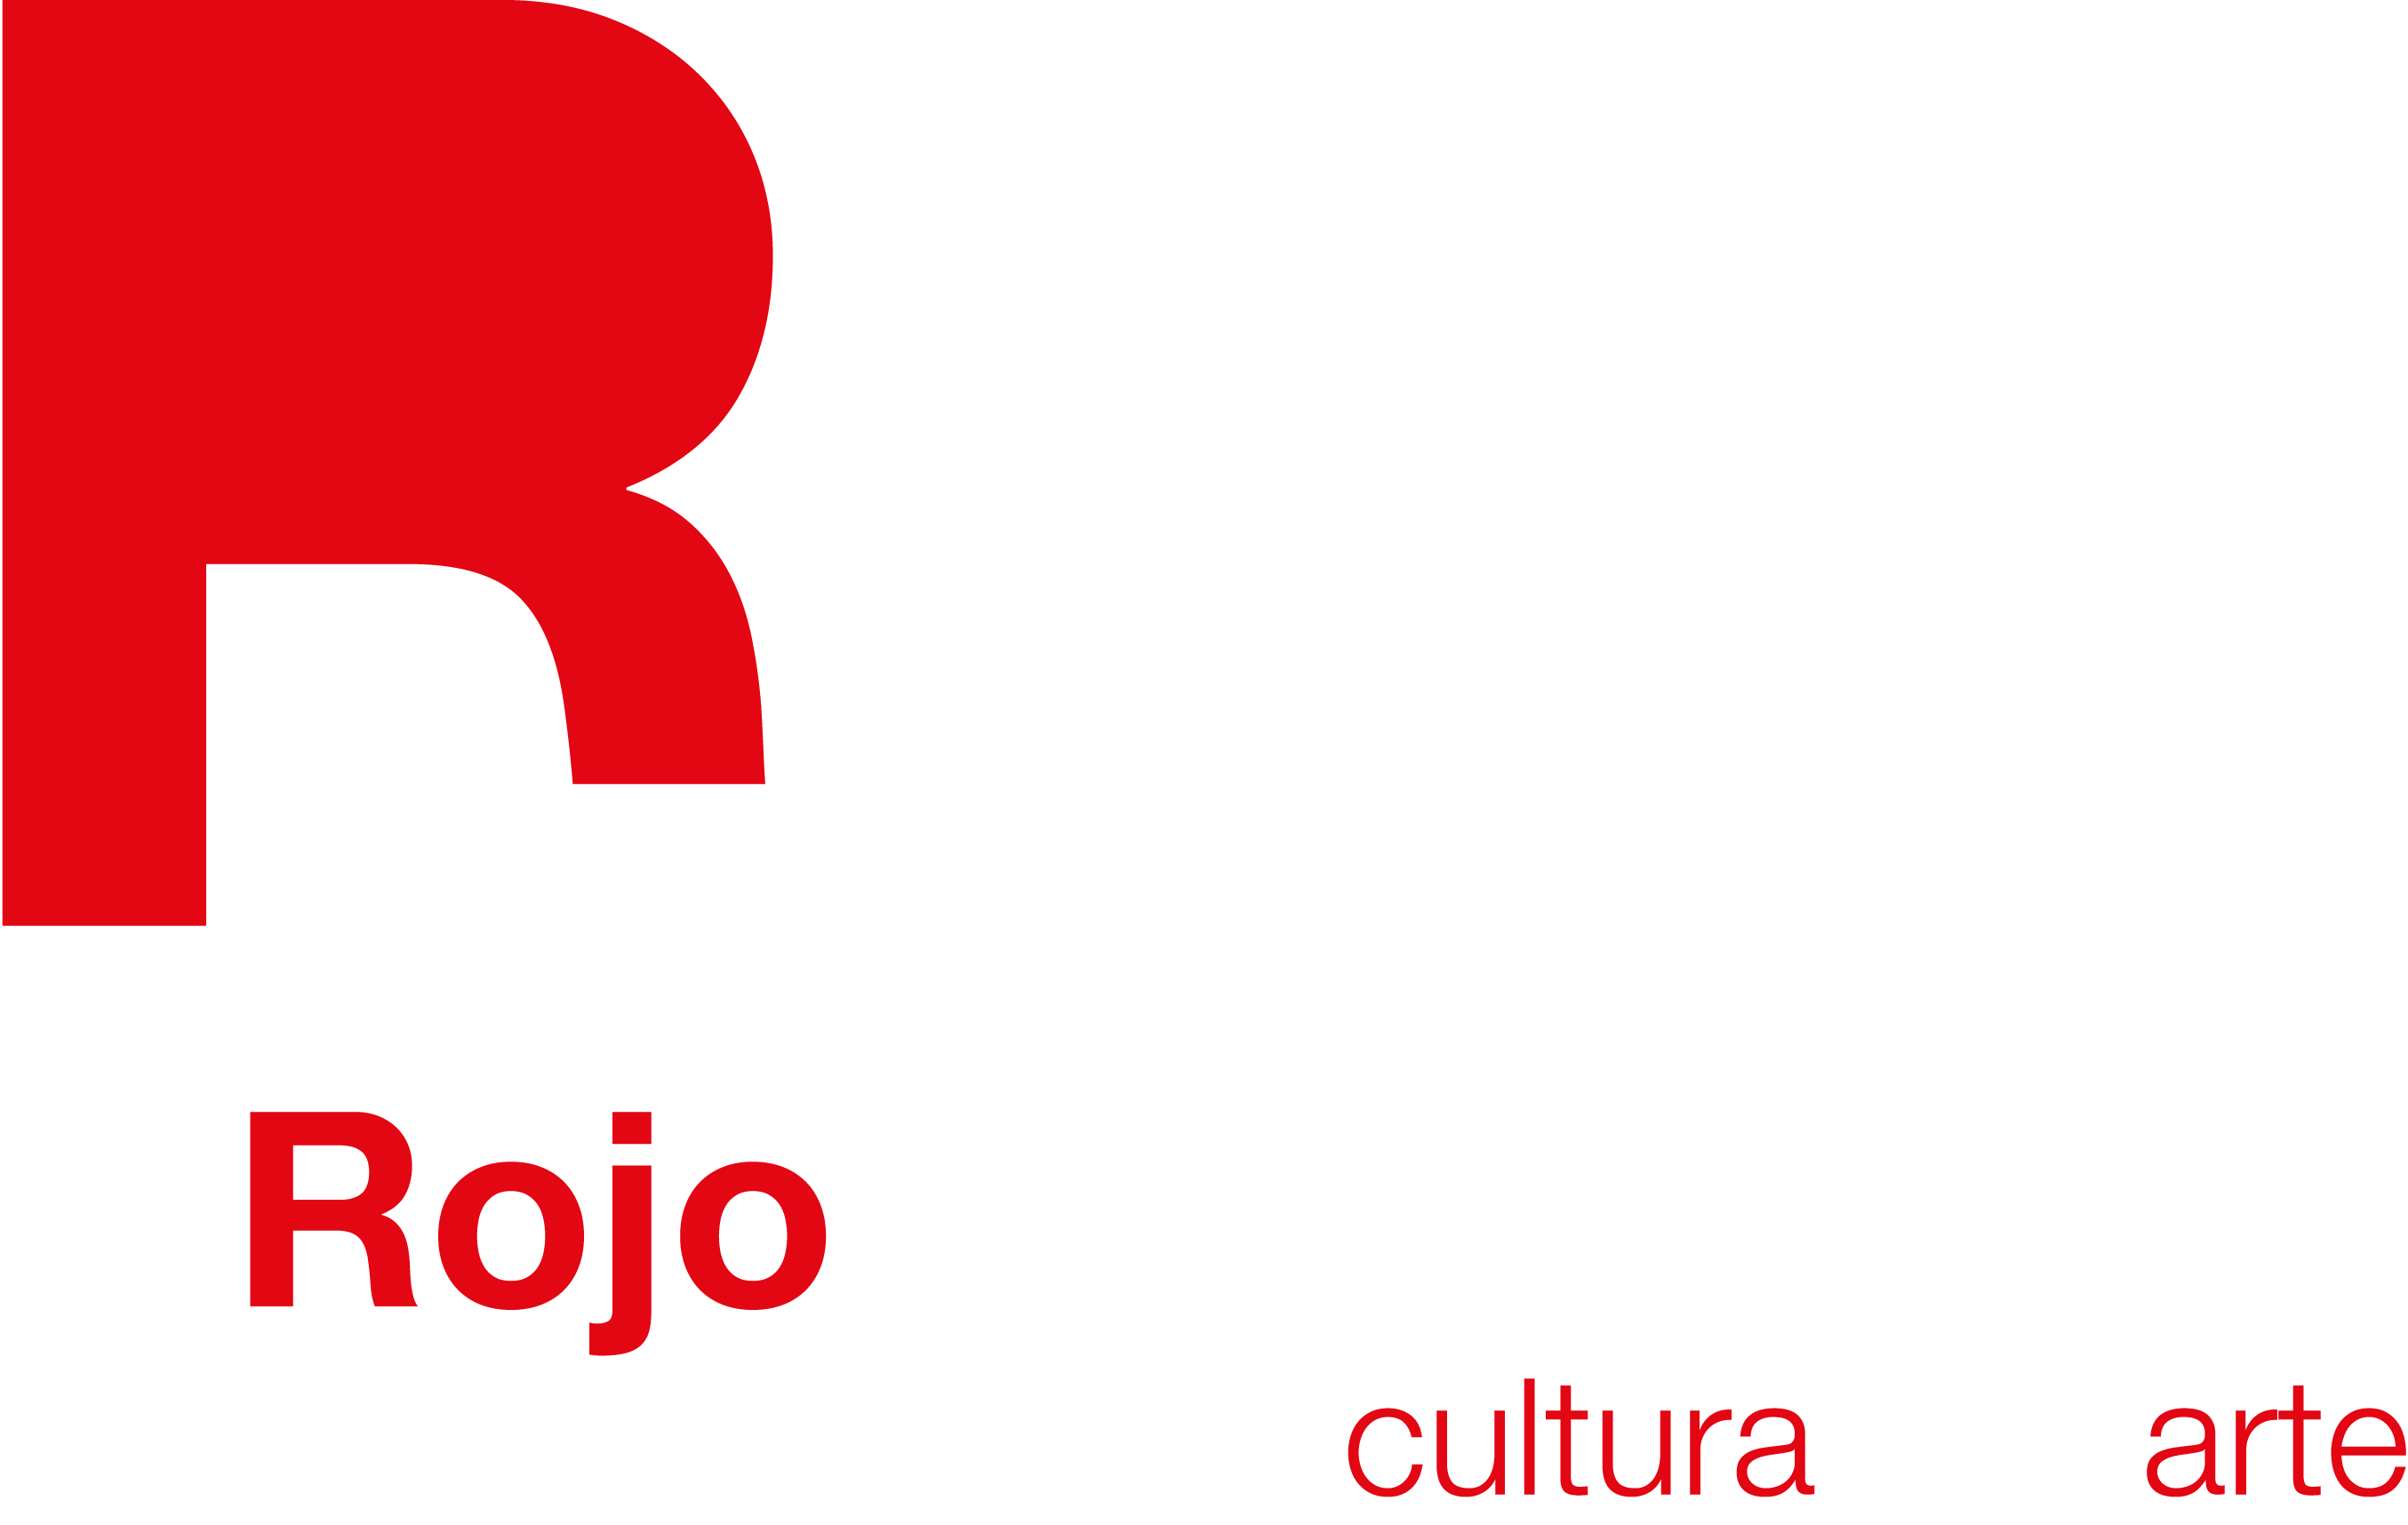 El Rojo de Tacubaya